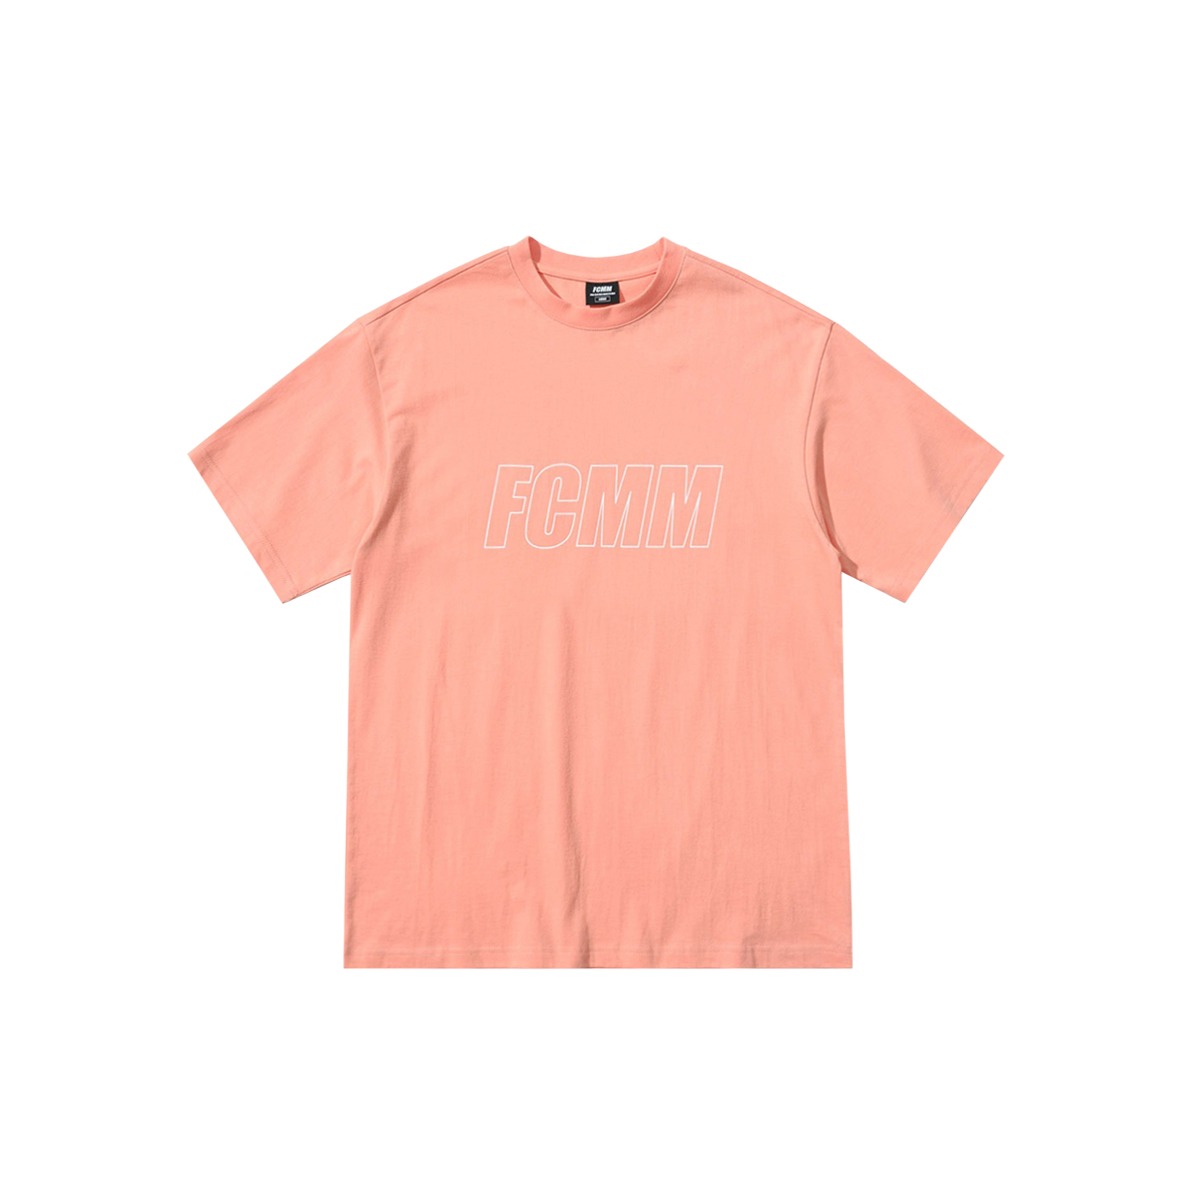 리니어 로고 티셔츠 - 피치 오렌지